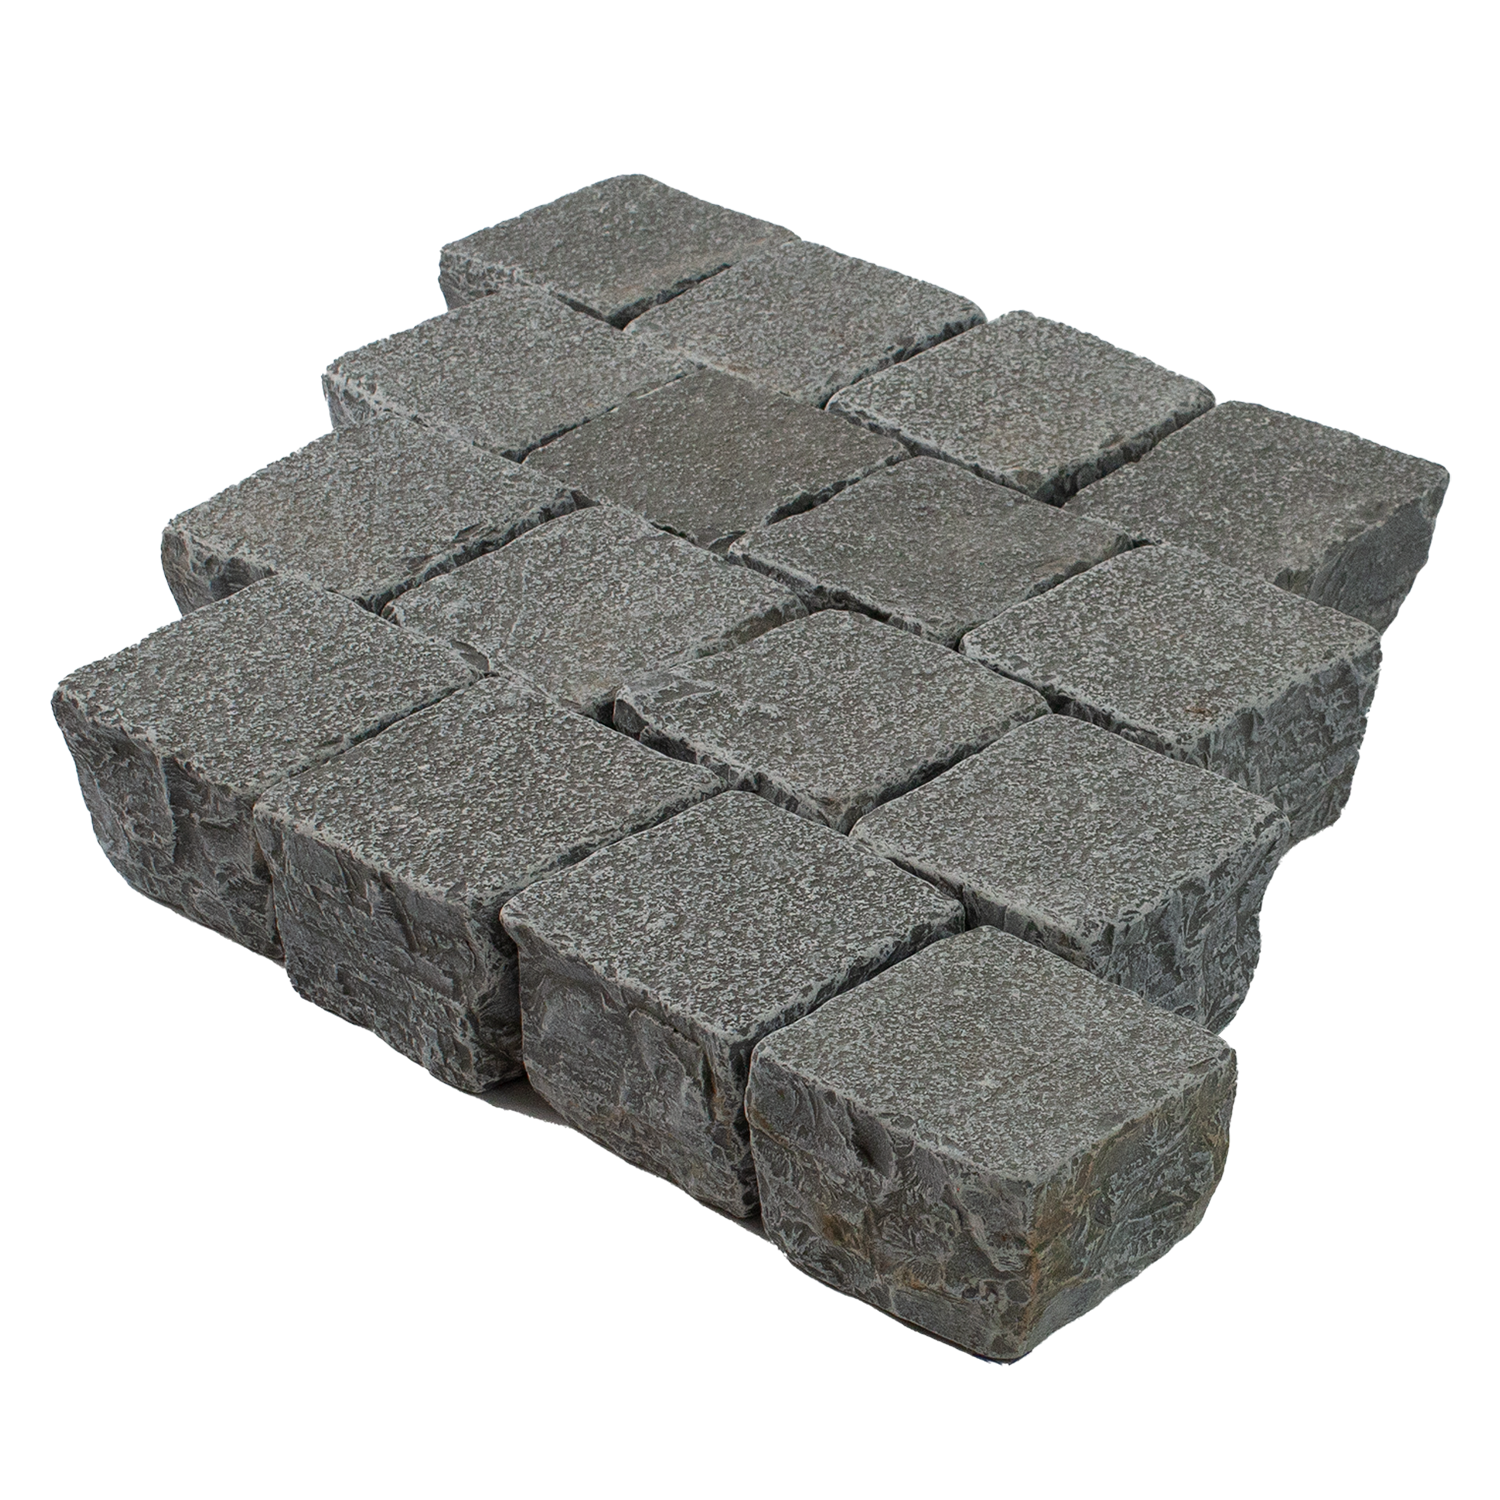 Platin Himalaya Kalkstein 90x60x2,5cm